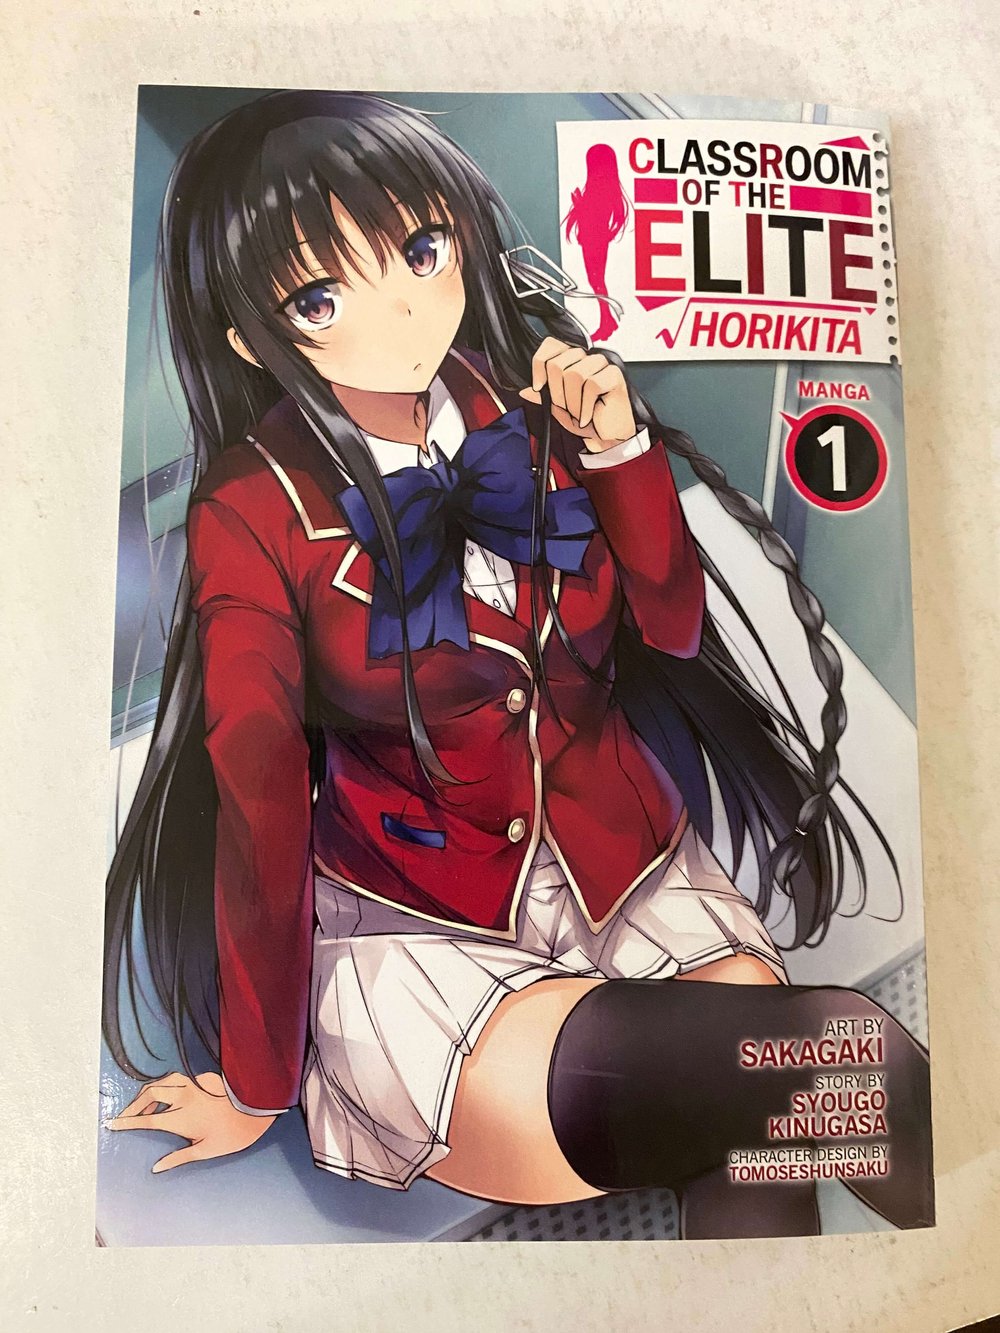 Classroom of the Elite: Horikita (Manga) Vol. 1: Horikita 1